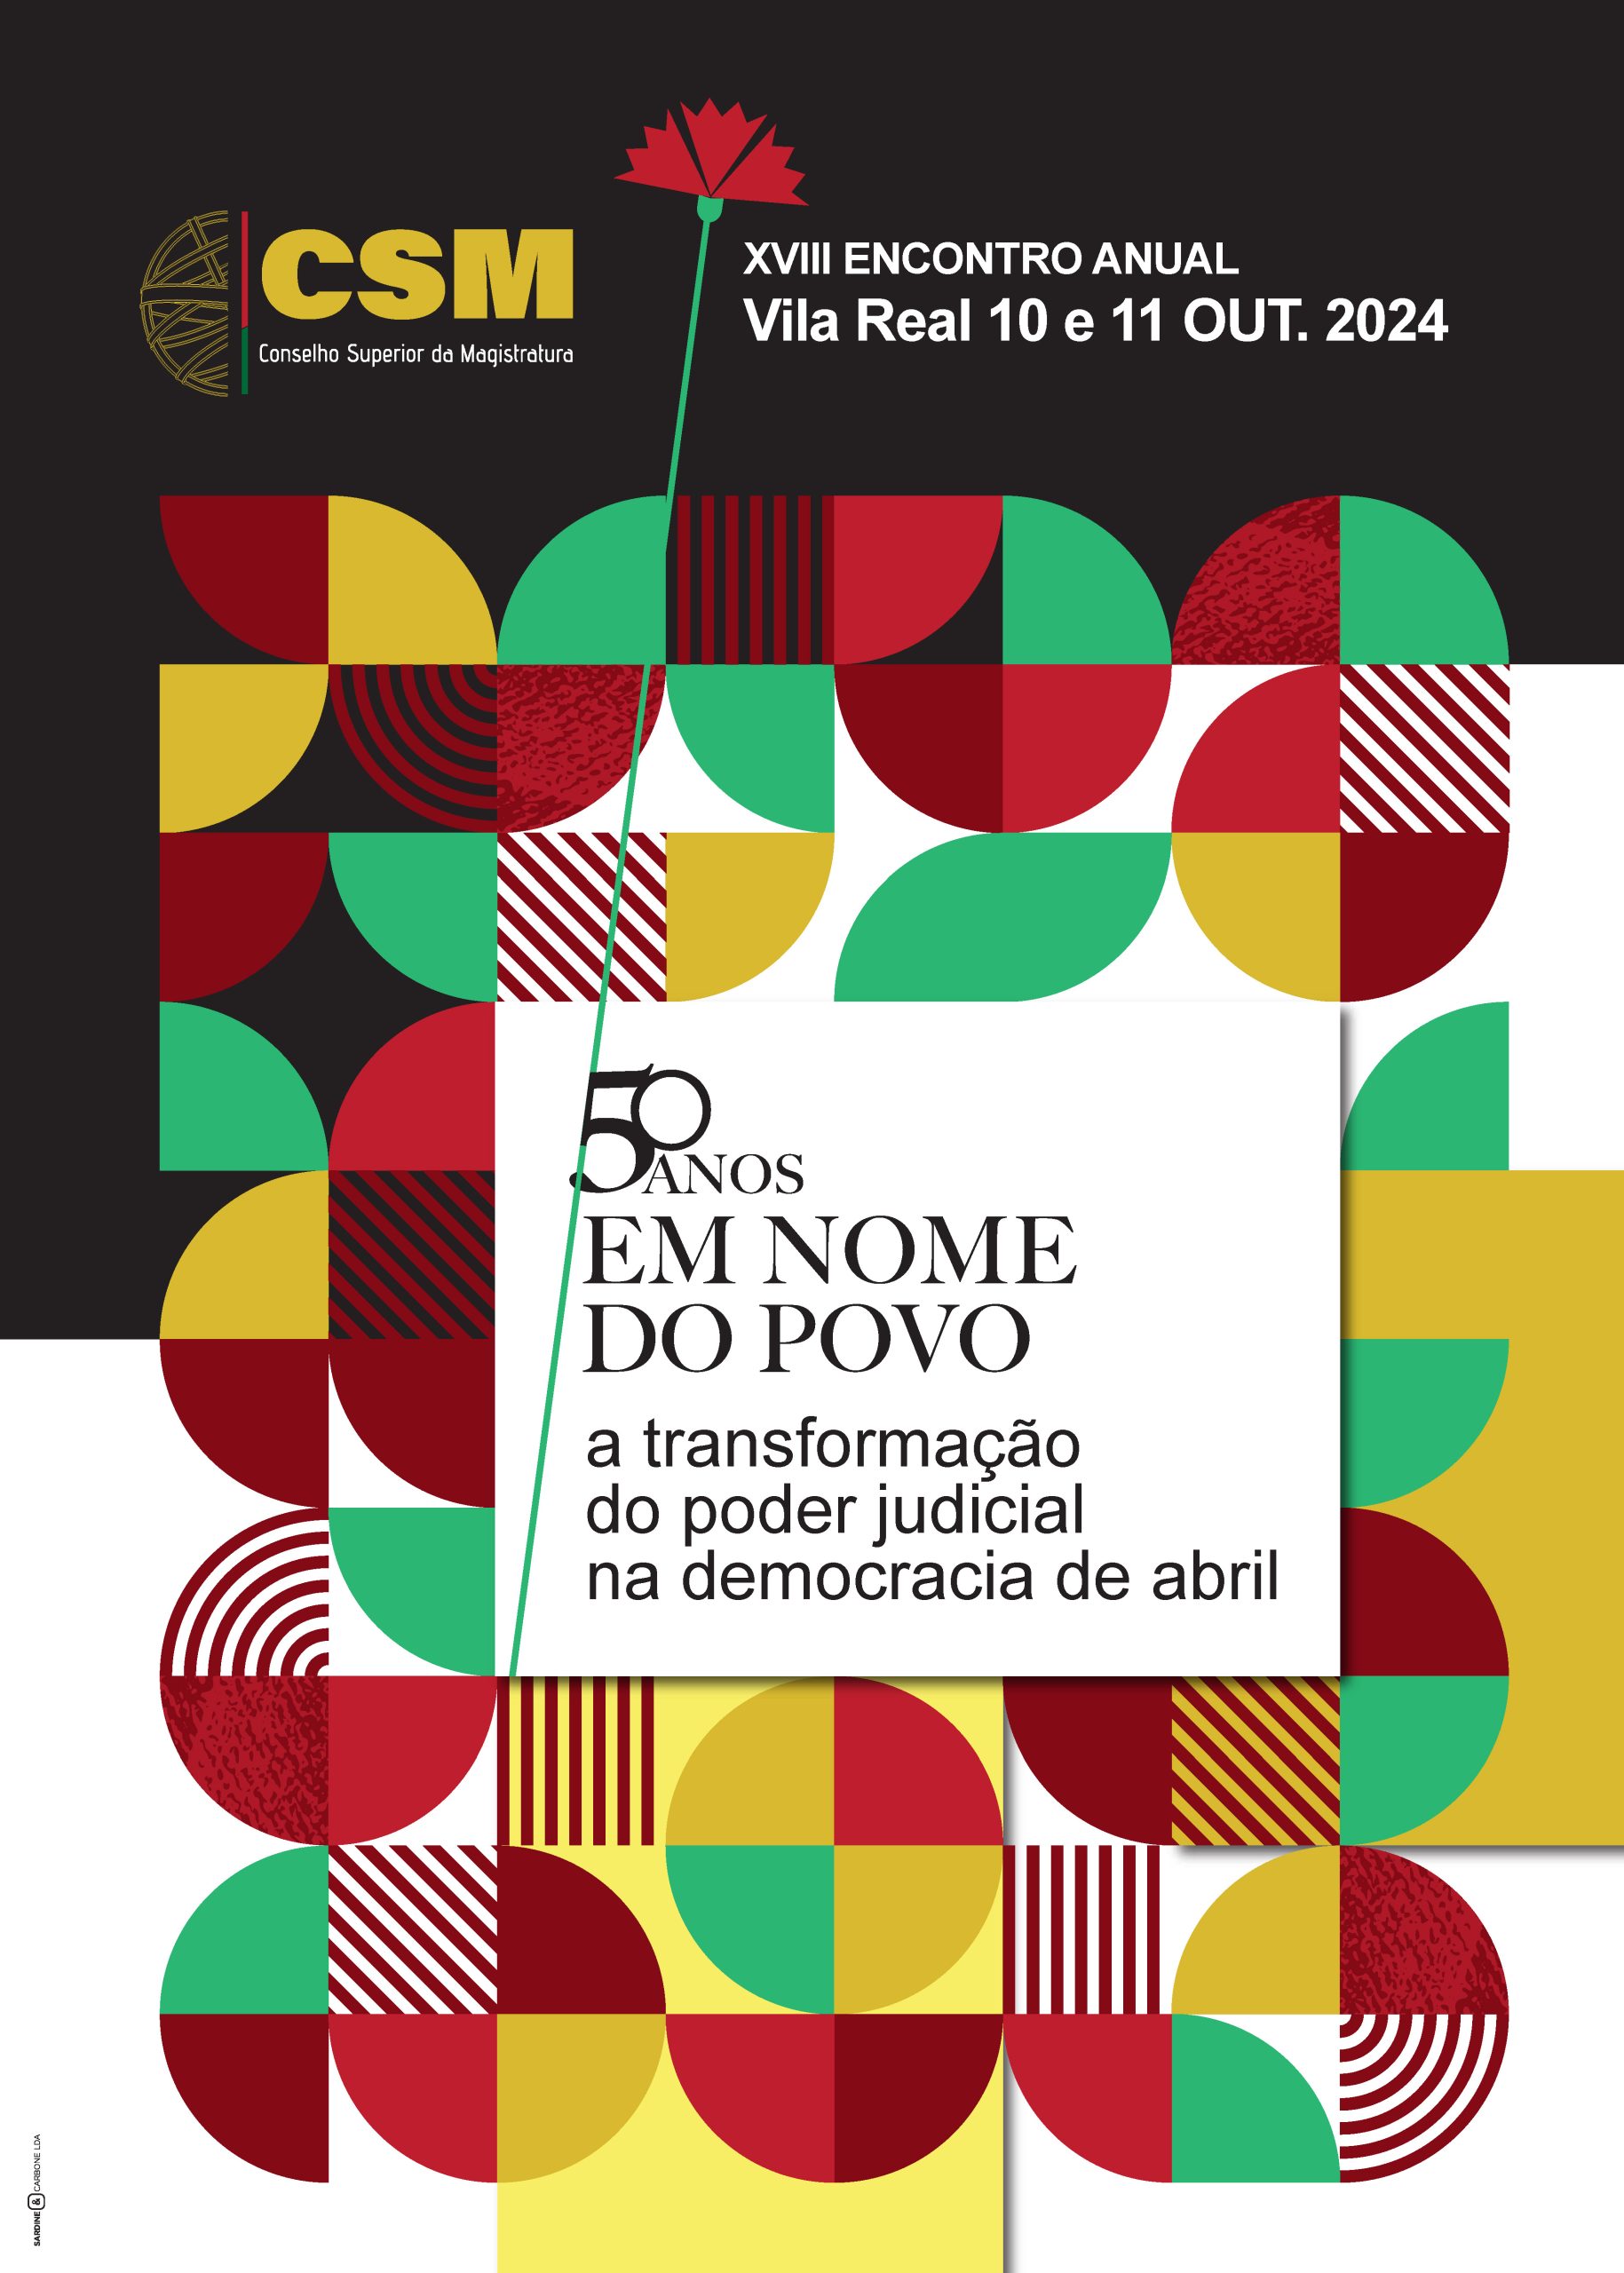 XVIII Encontro Anual do CSM - A transformação do poder judicial na democracia de abril